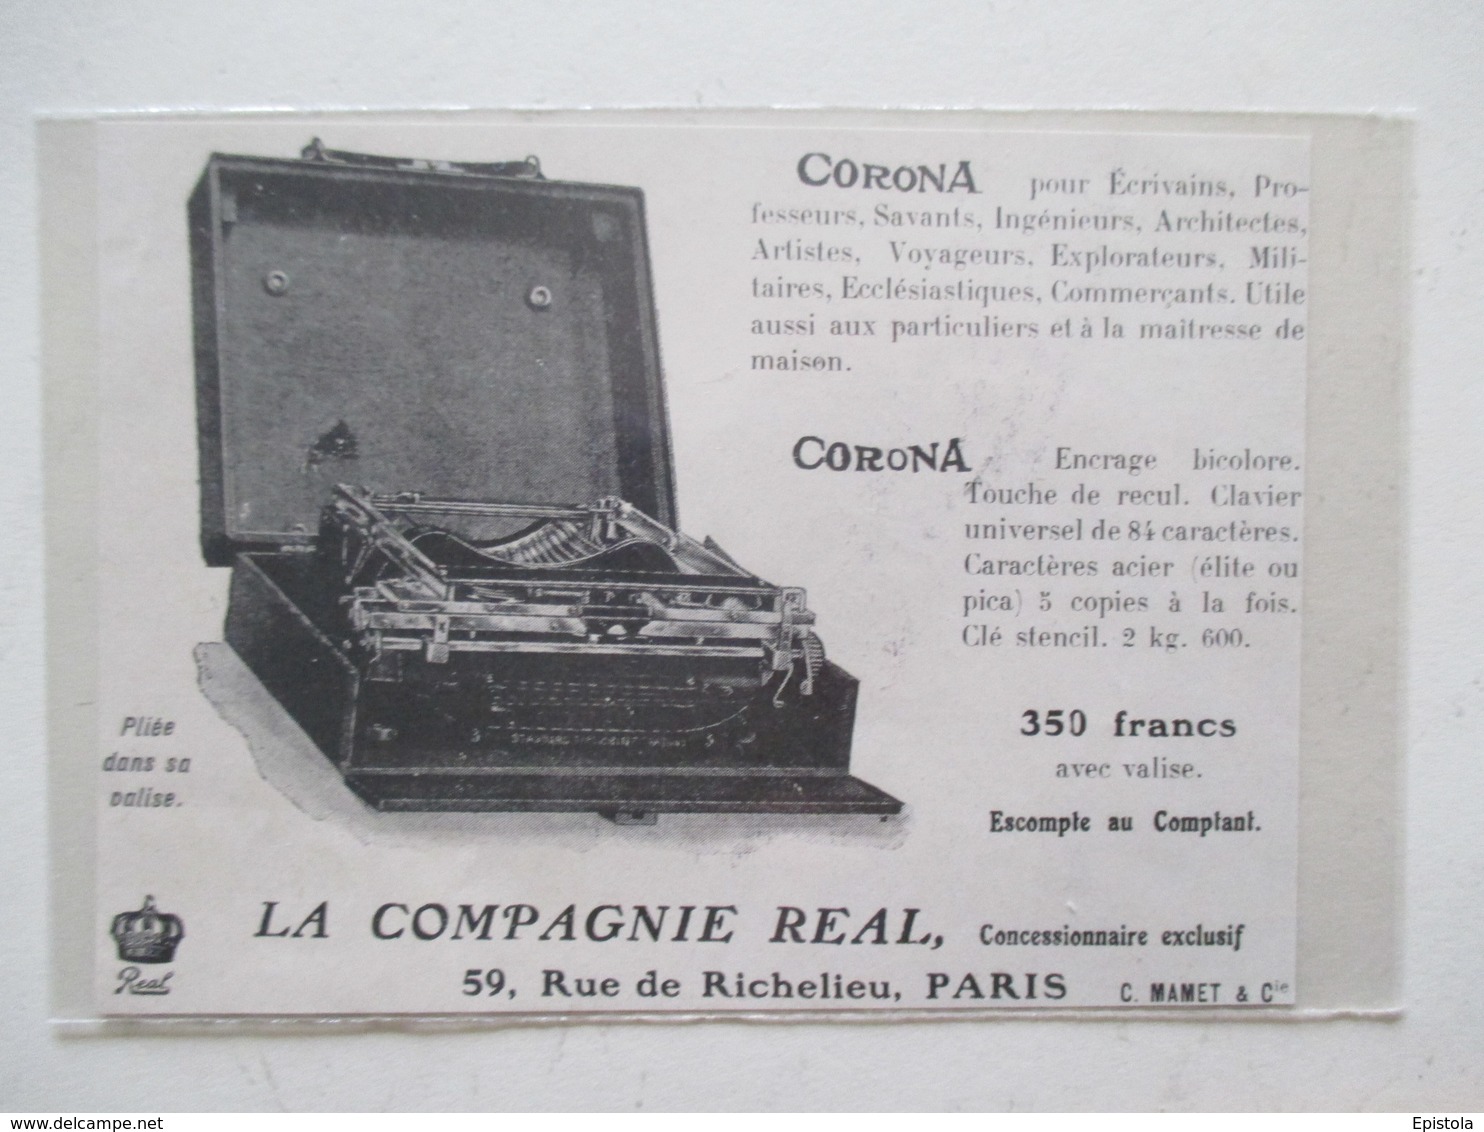 Machine à écrire Portative "CORONA" Ets Compagnie Real    -  Coupure De Presse De 1909 - Autres Appareils